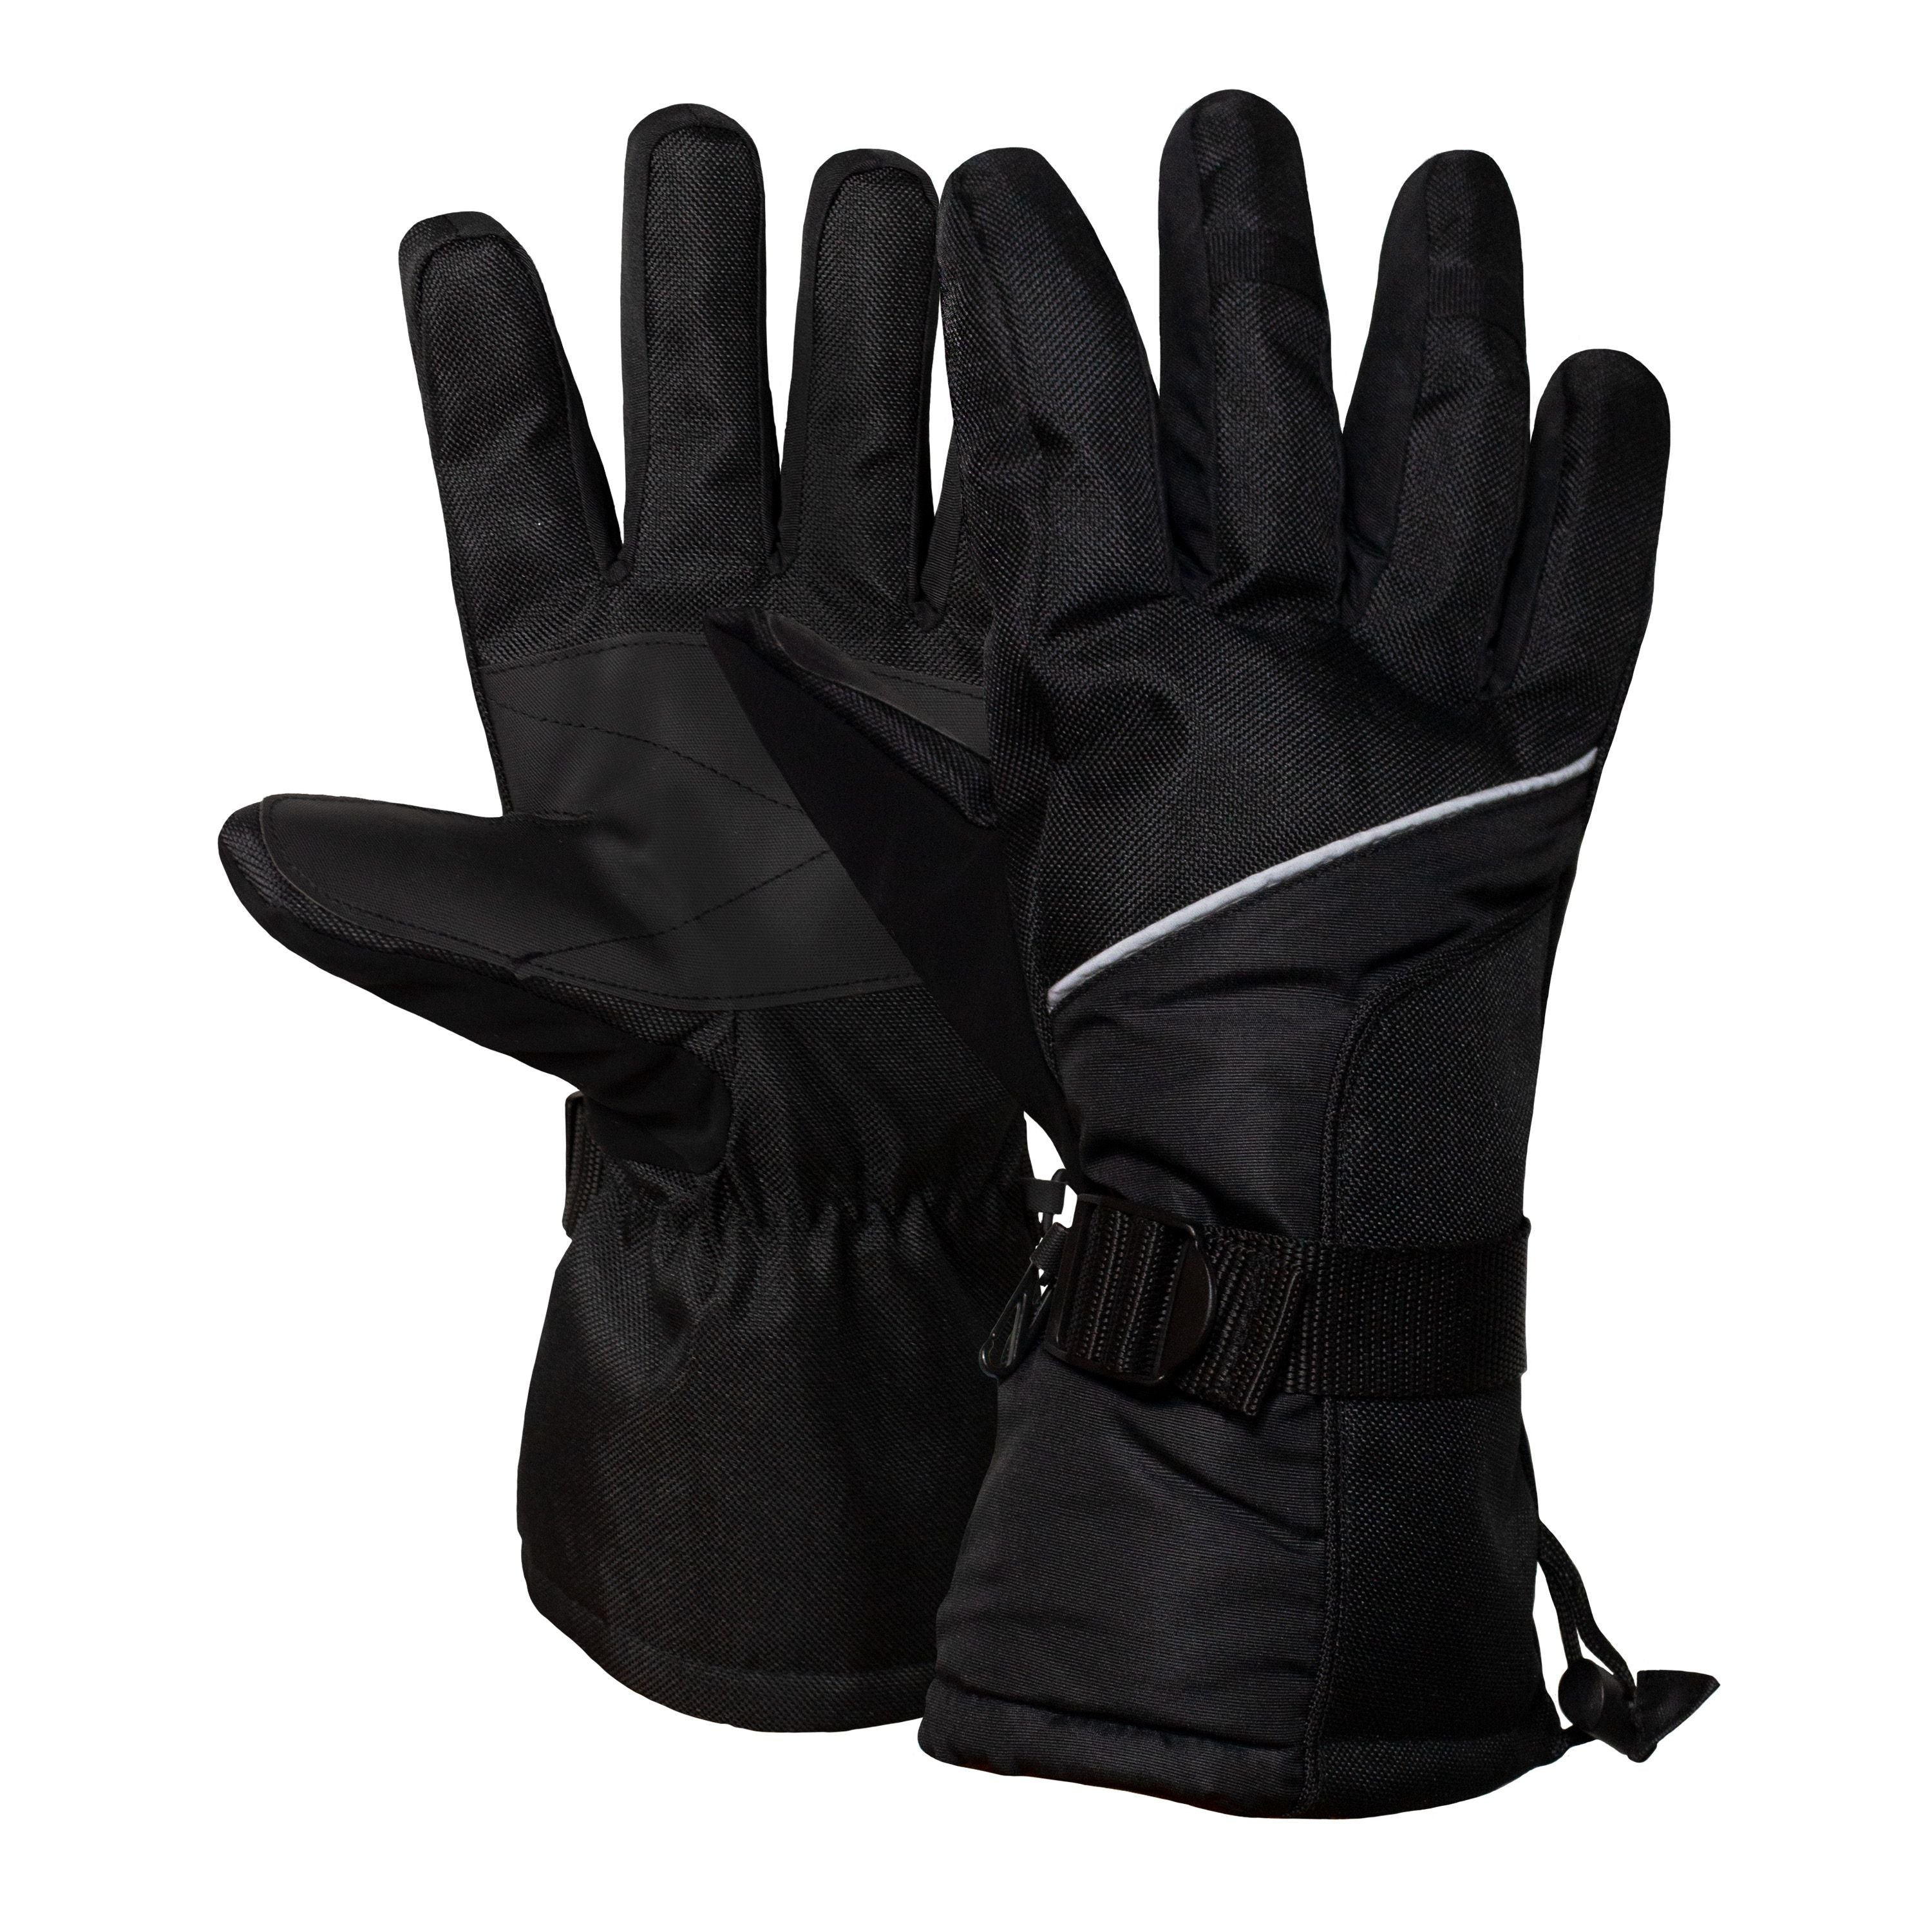 Gants de sport Veyrier - Homme||Veyrier Sport gloves - Men's